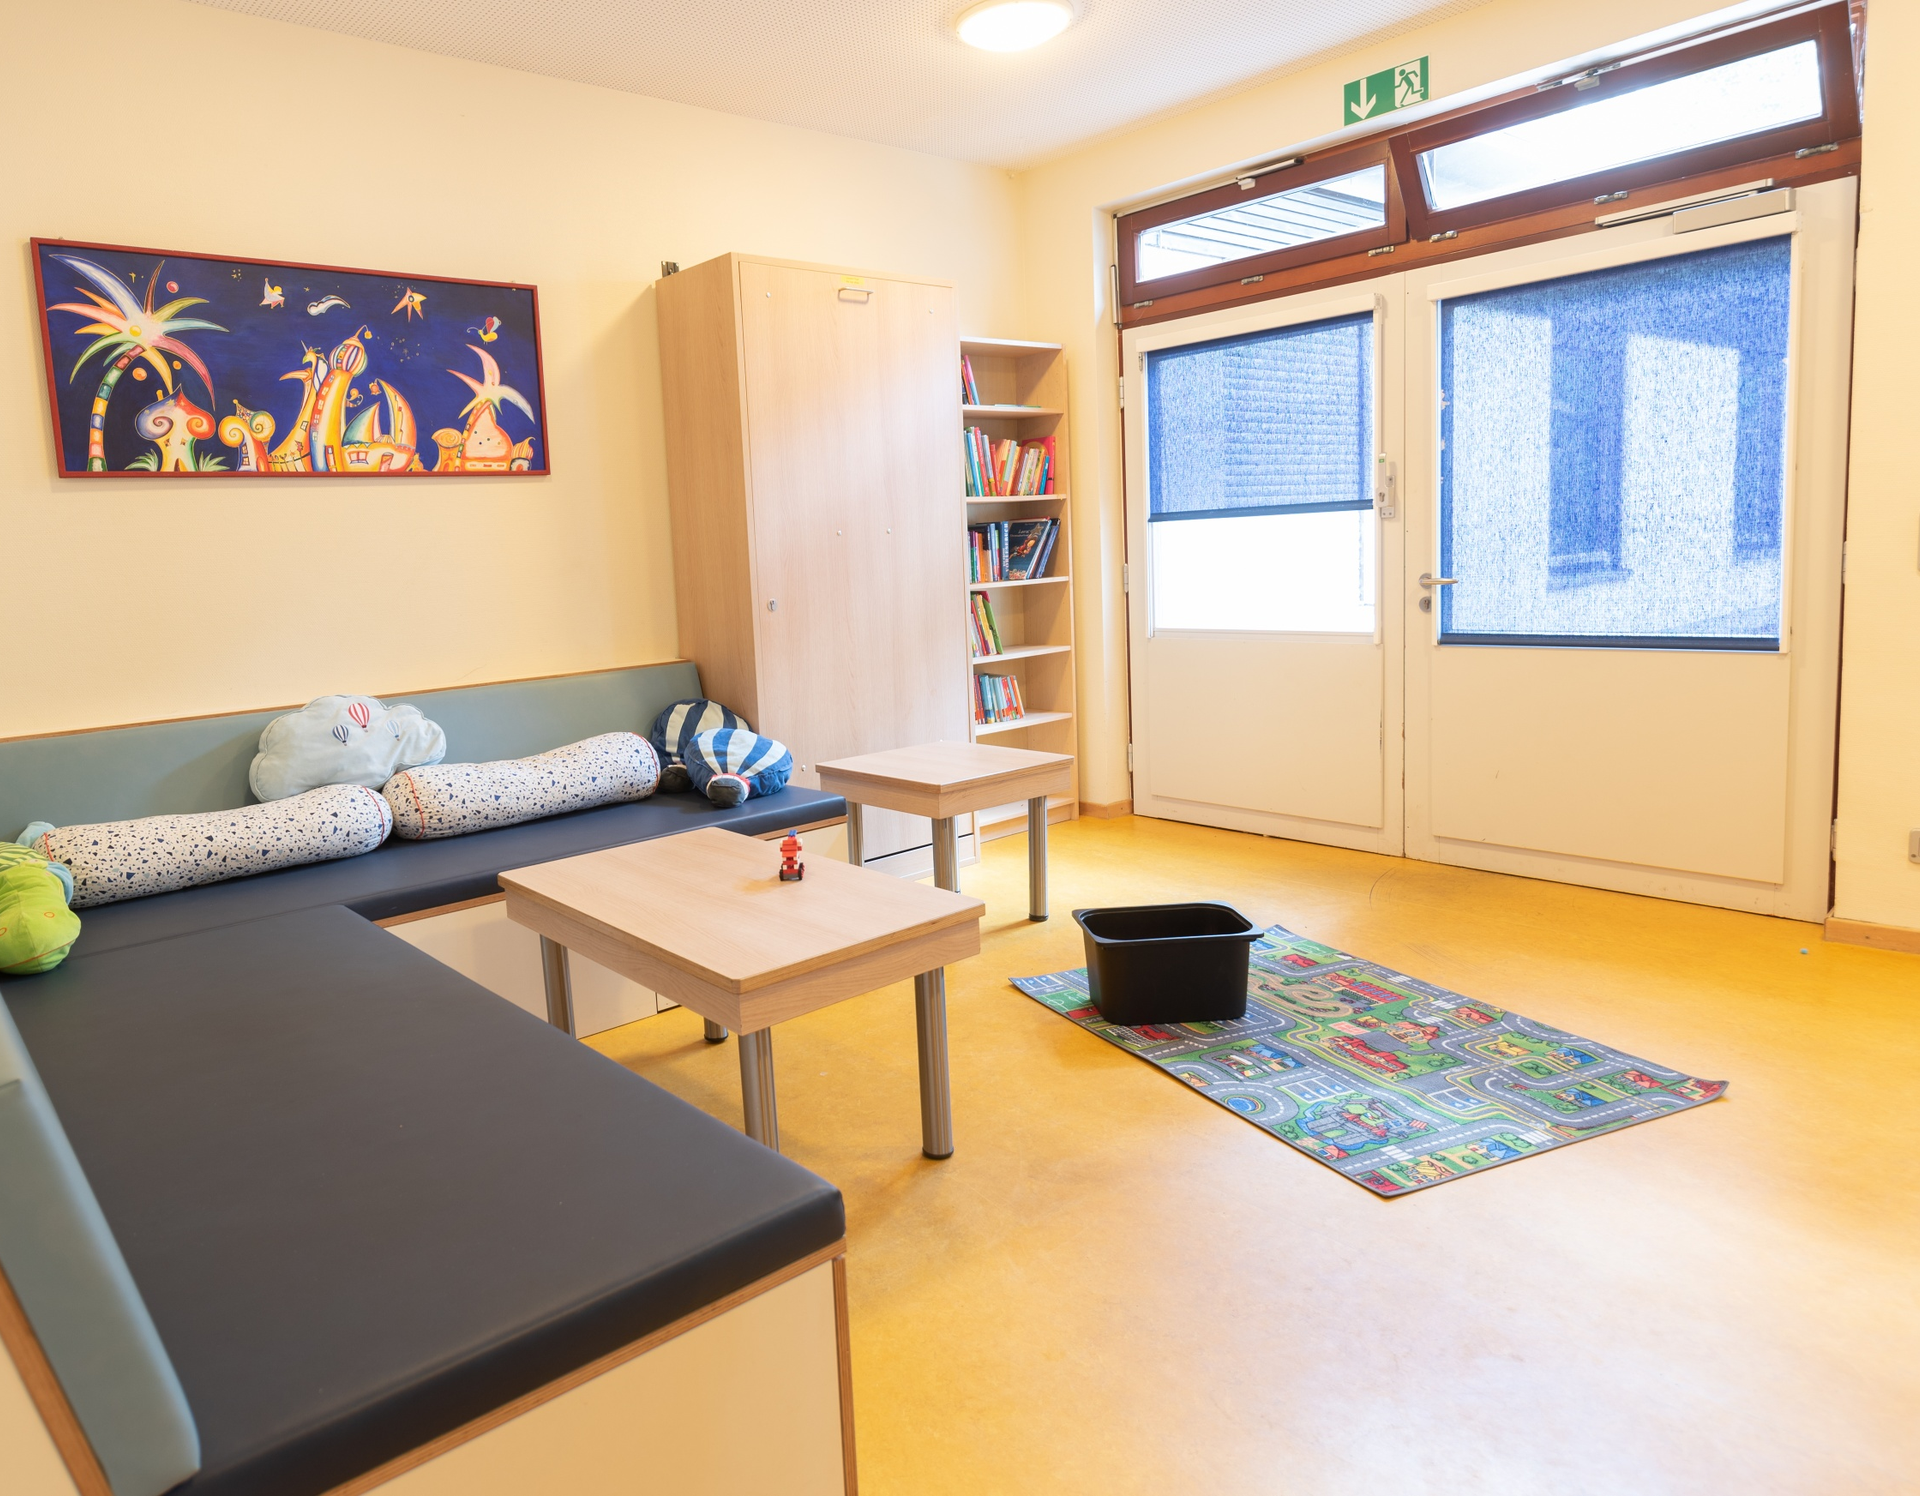 Das Bild zeigt einen Wohnraum mit einem Sofa, zwei kleinen Tischen un einem Bücherragl. Auf dem Boden liegt ein Spielteppich.